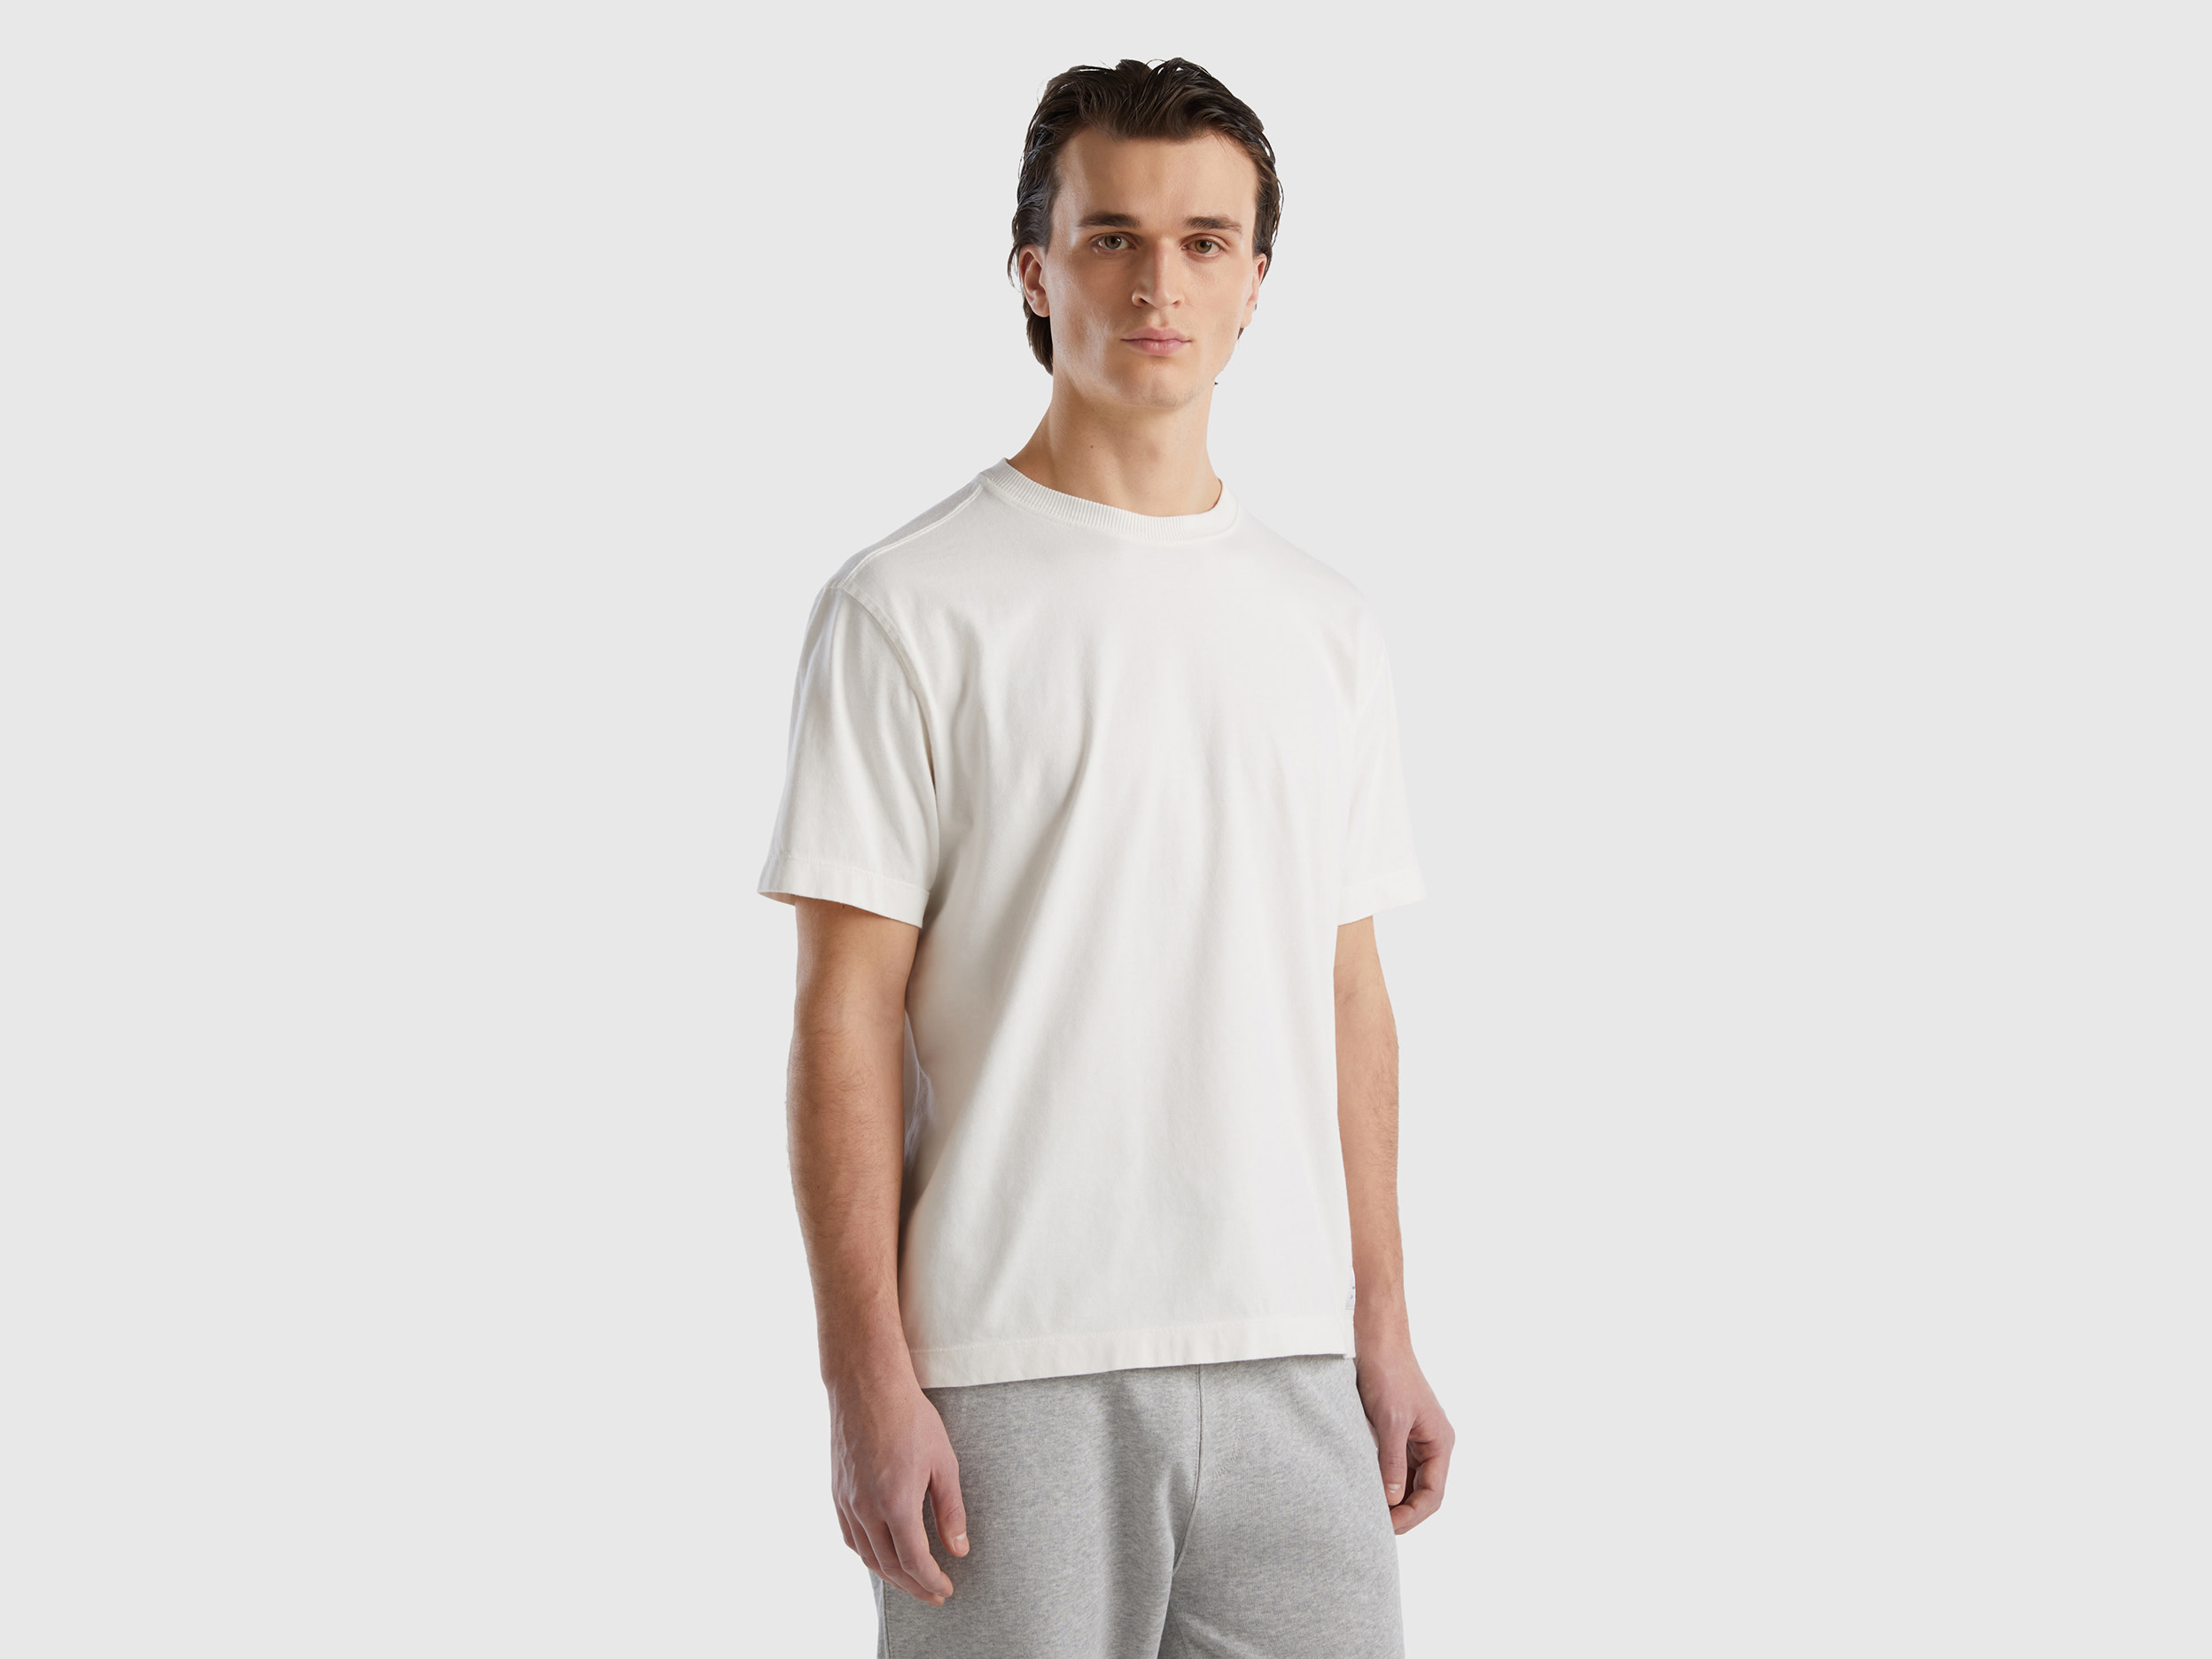 Benetton, 100% Organic Cotton Crew Neck T-shirt, size XXL, Creamy White, Men